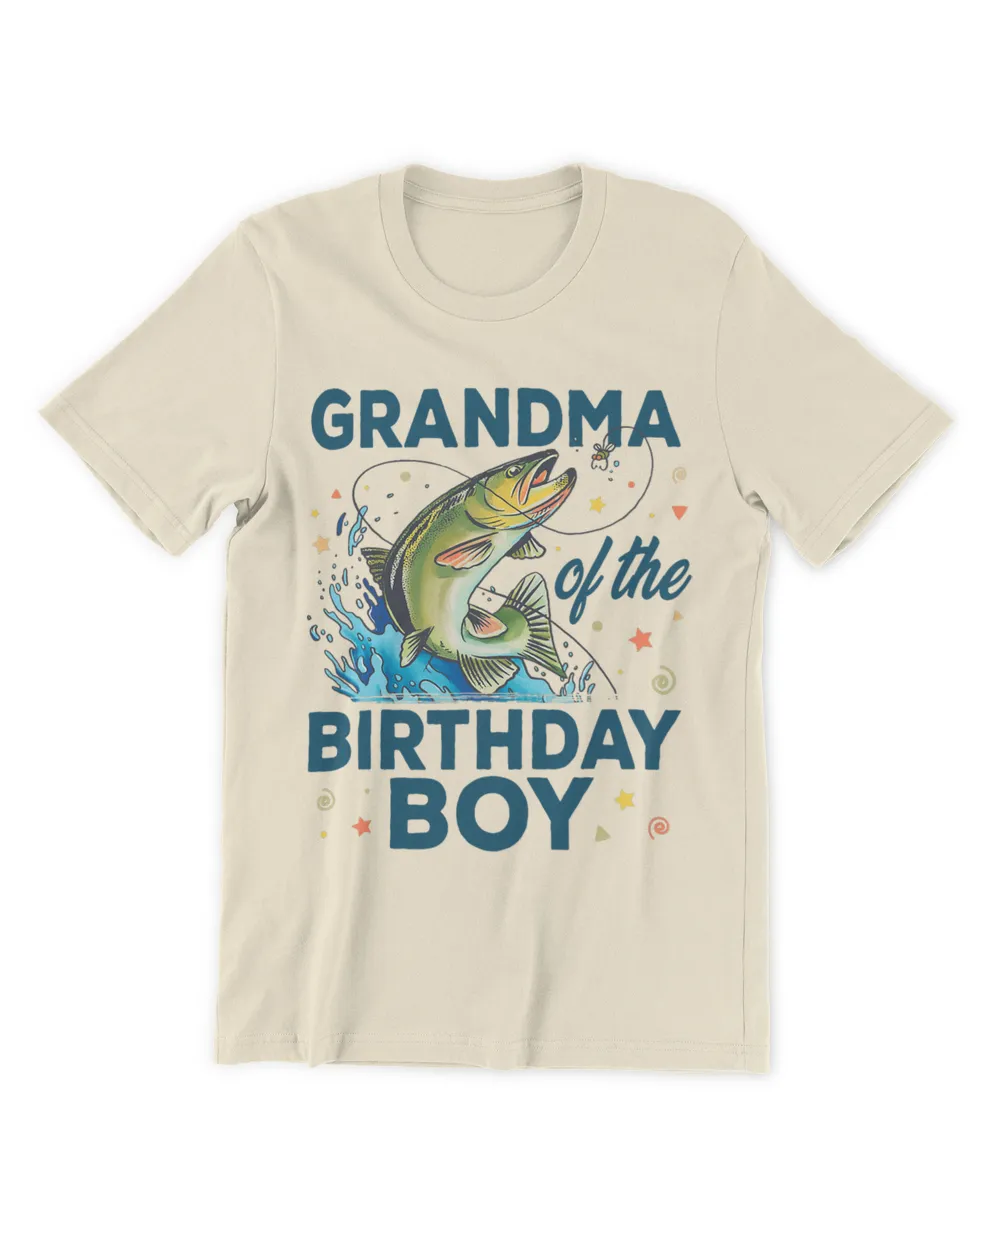 Grandma Of The Birthday Boy Fishing Birthday Bass Fish Bday